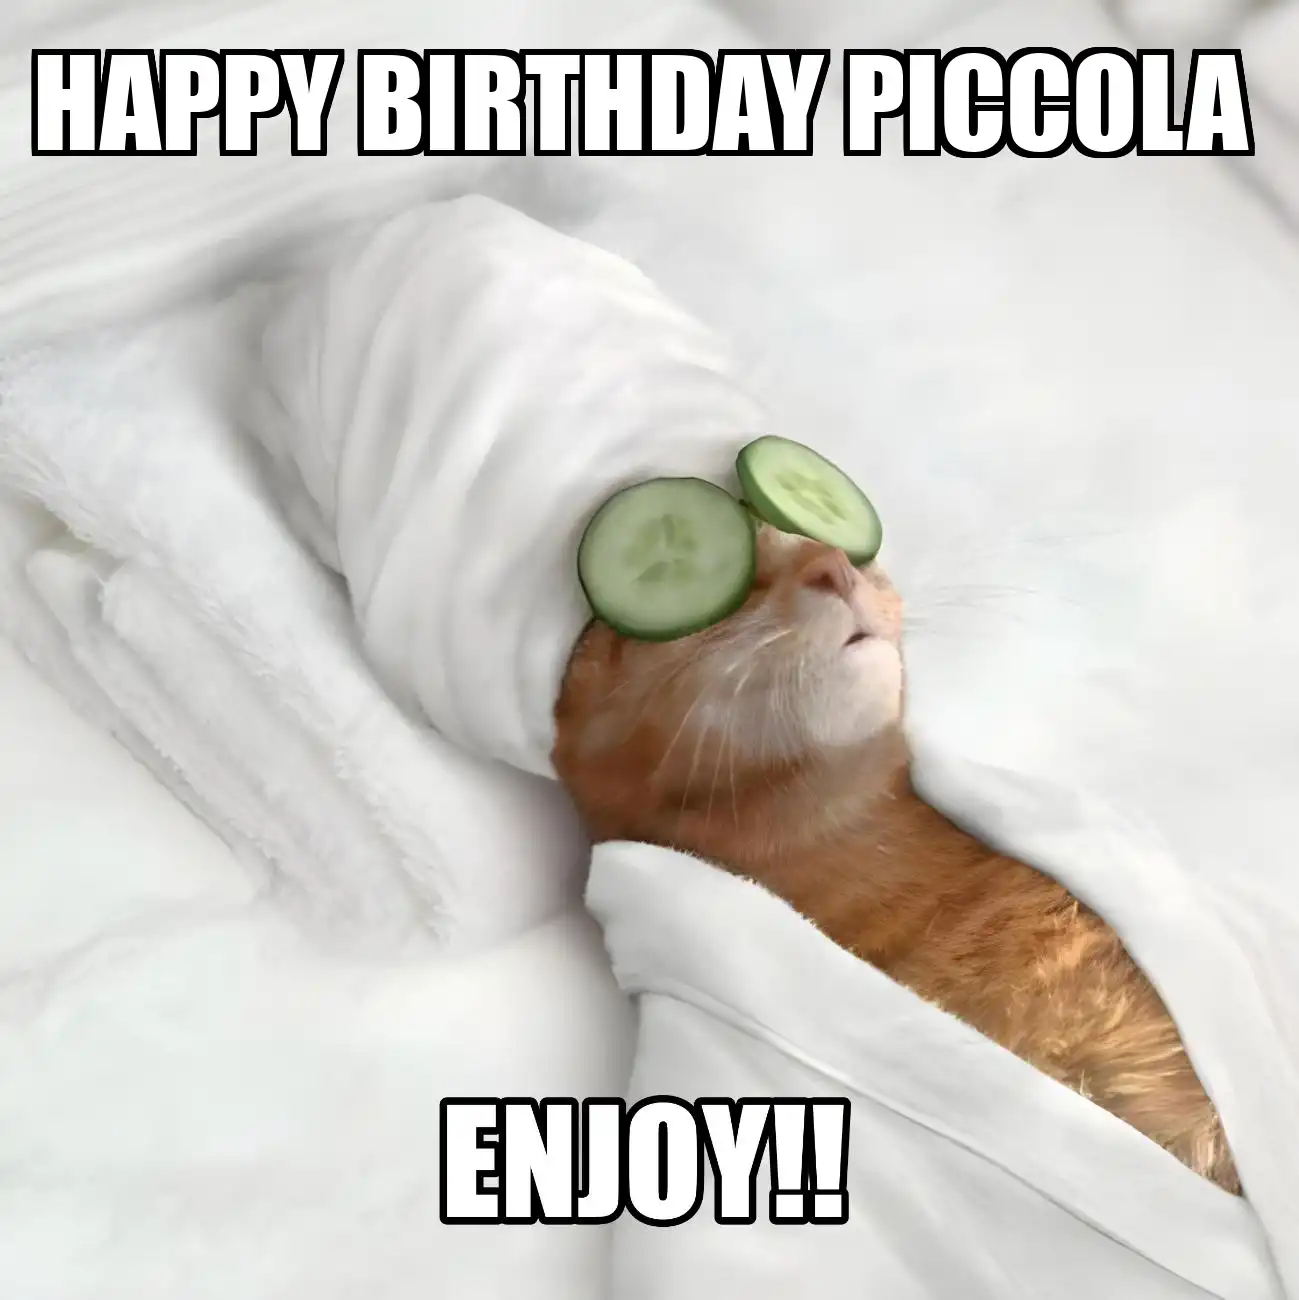 Happy Birthday Piccola Enjoy Cat Meme